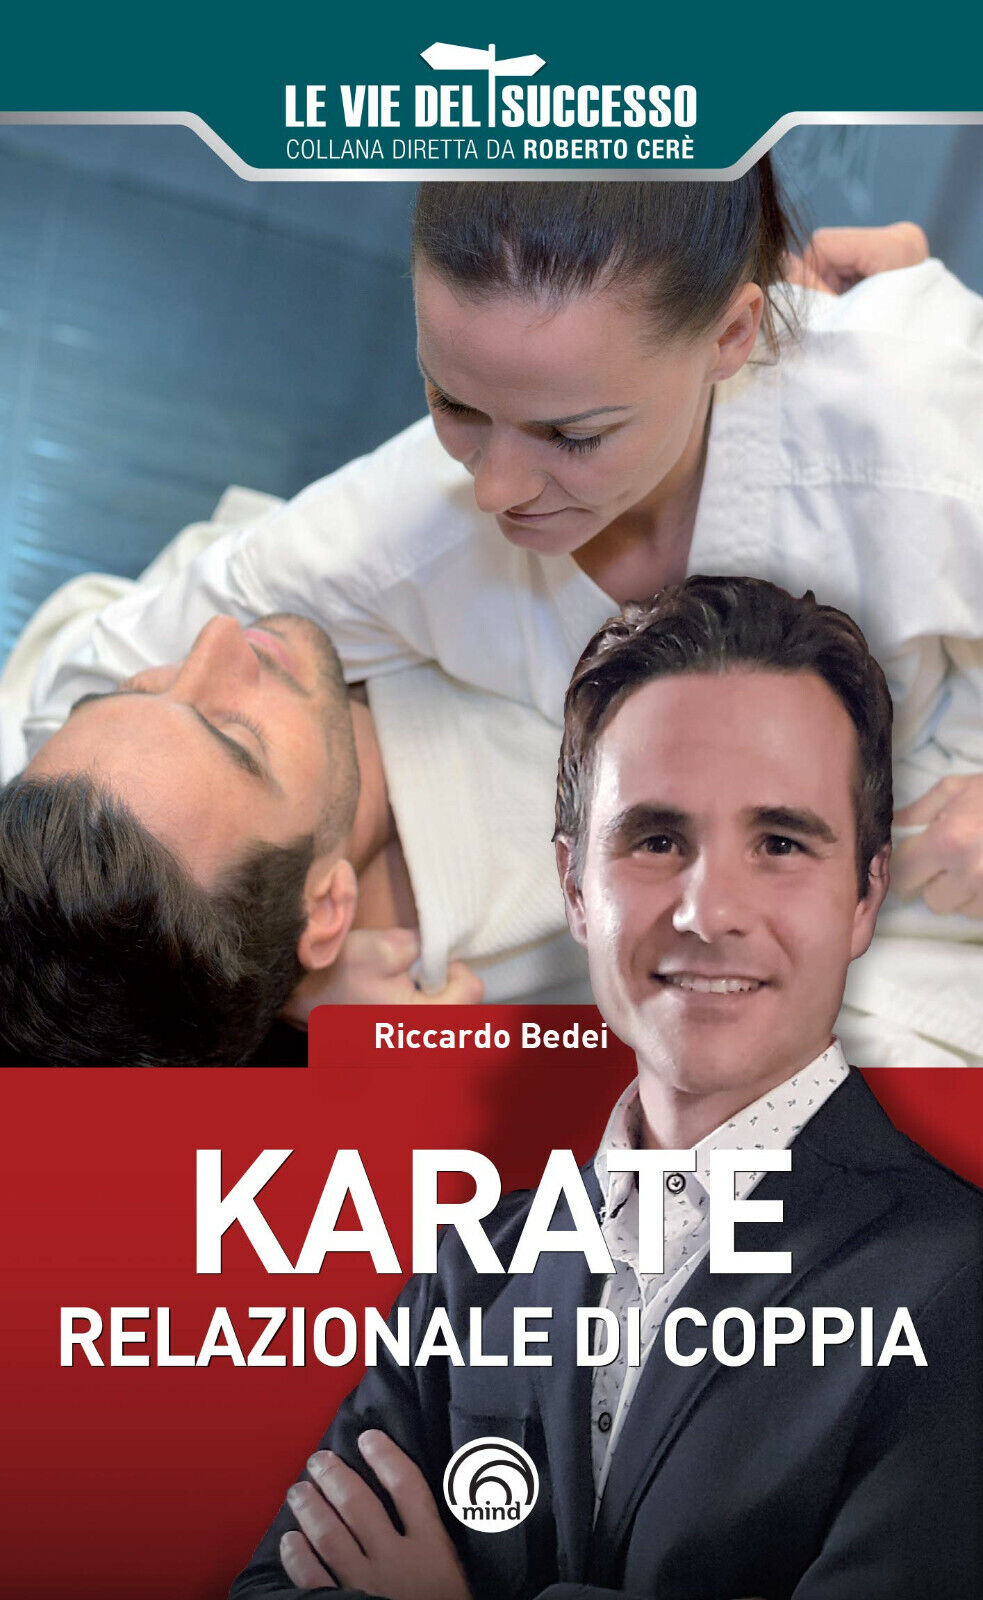 Karate relazionale di coppia - Riccardo Bedei - Mind, 2020 libro usato